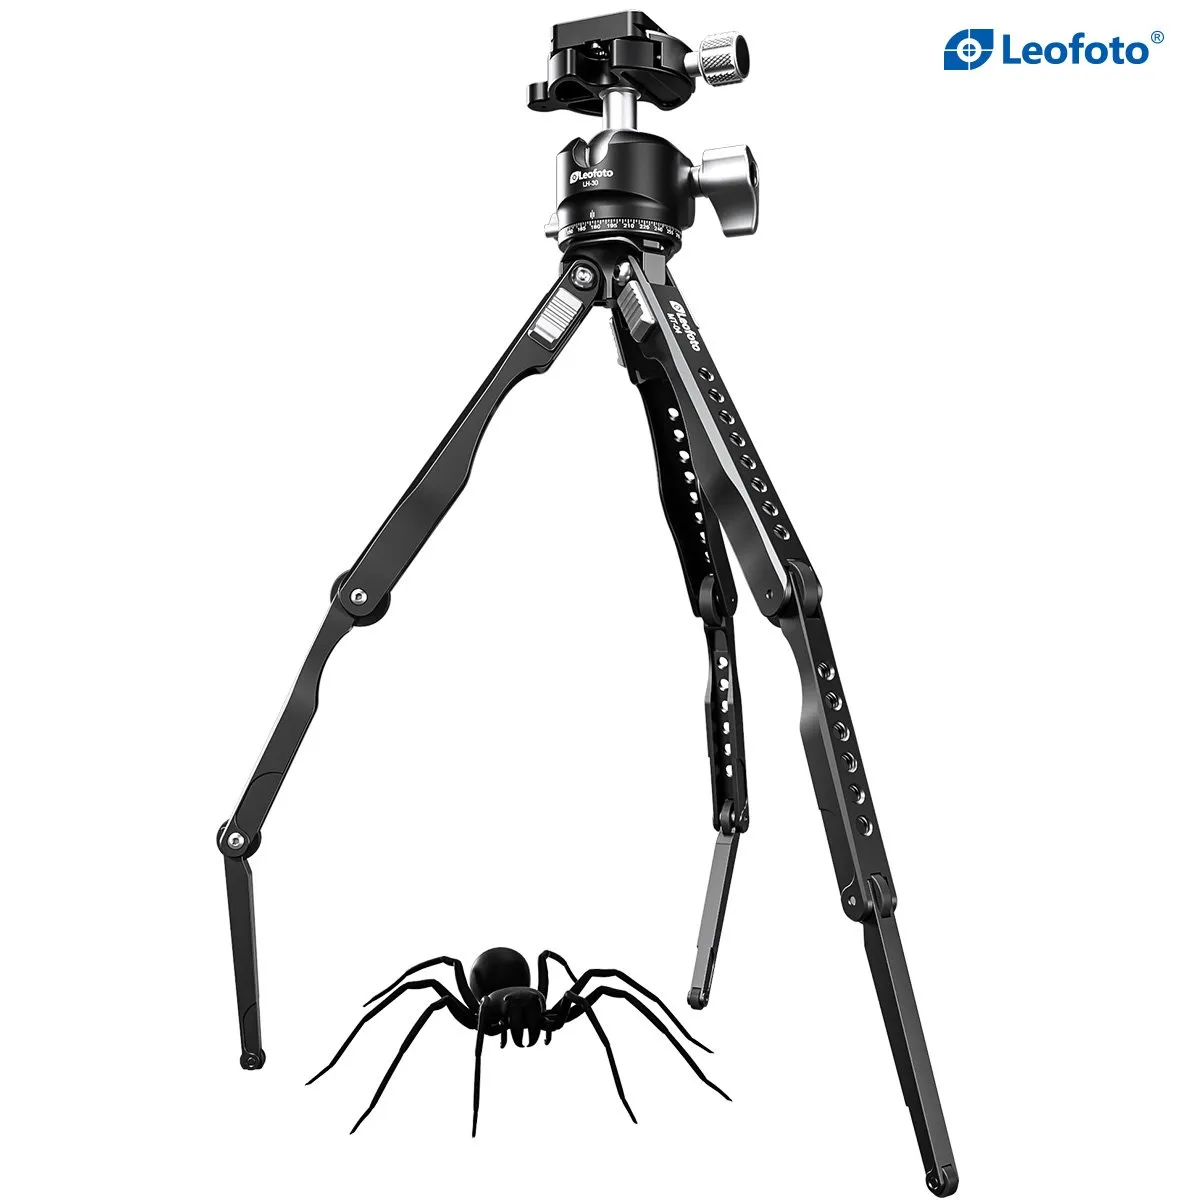 Leofoto ra mắt tripod Leofoto Spider với thiết kế chân với các khớp gập